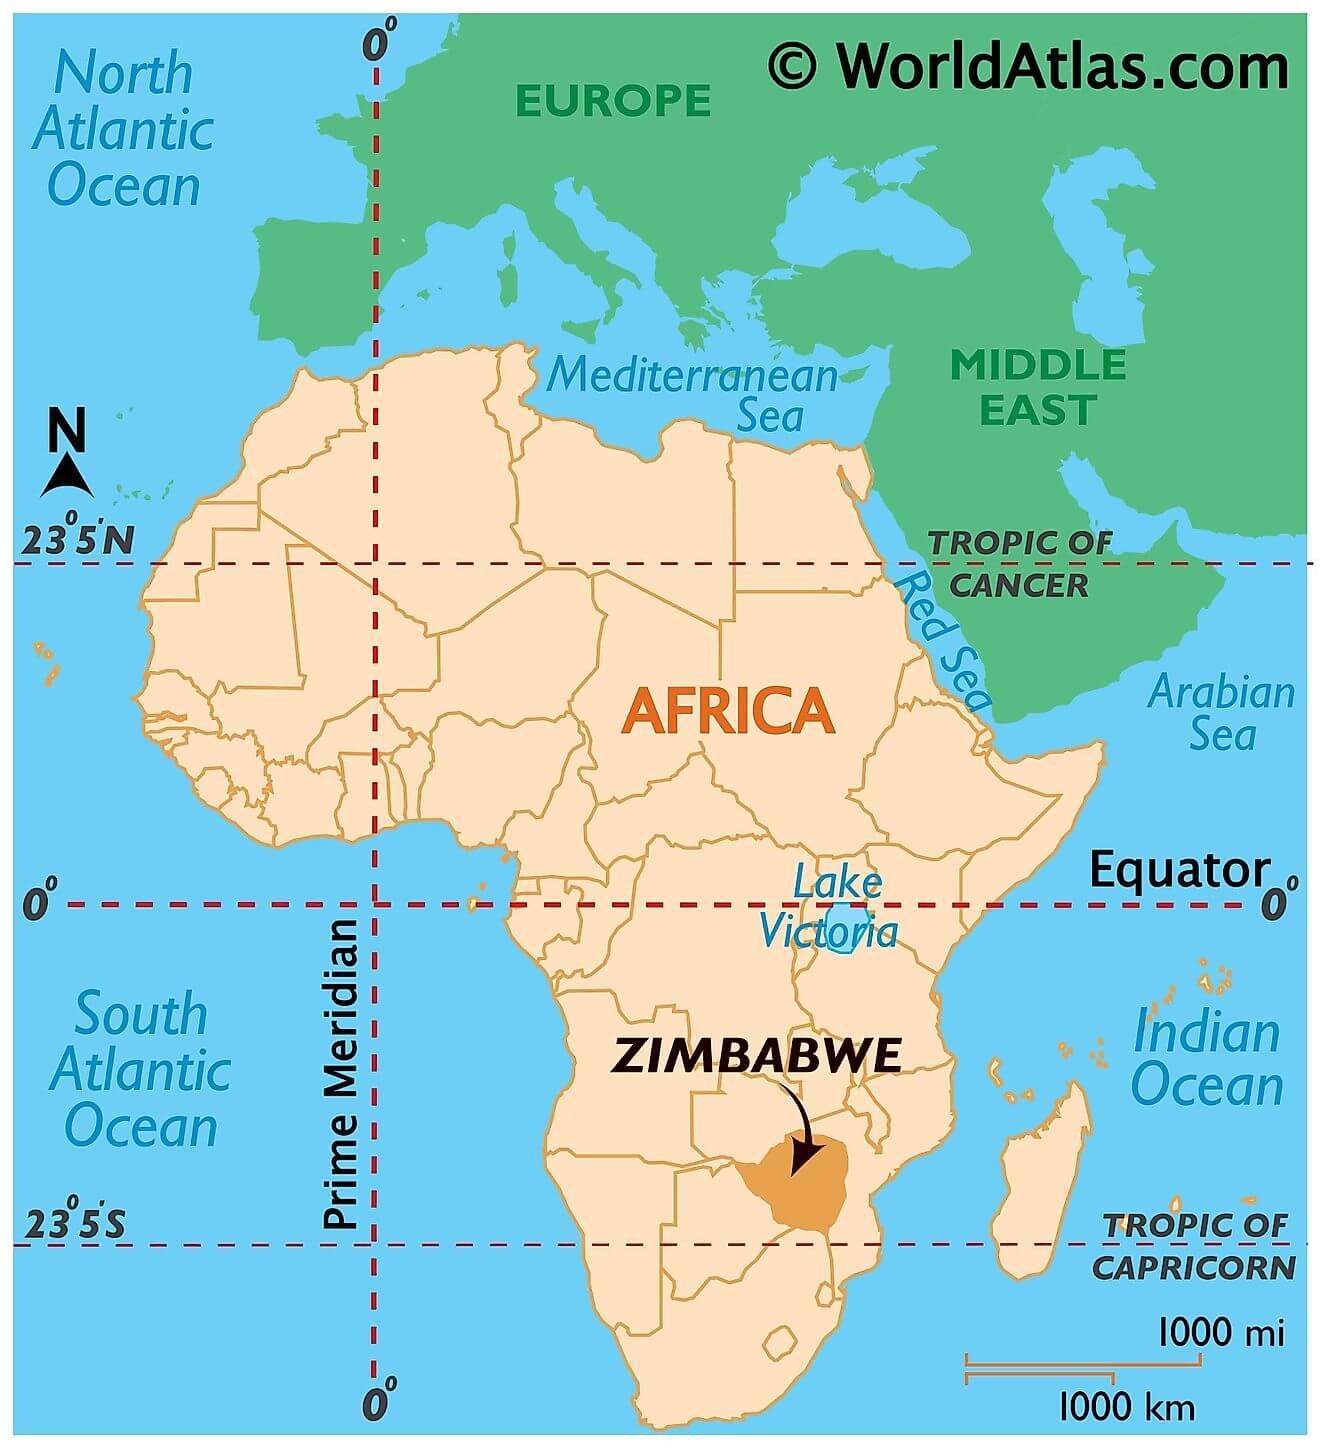 Where is Zimbabwe?